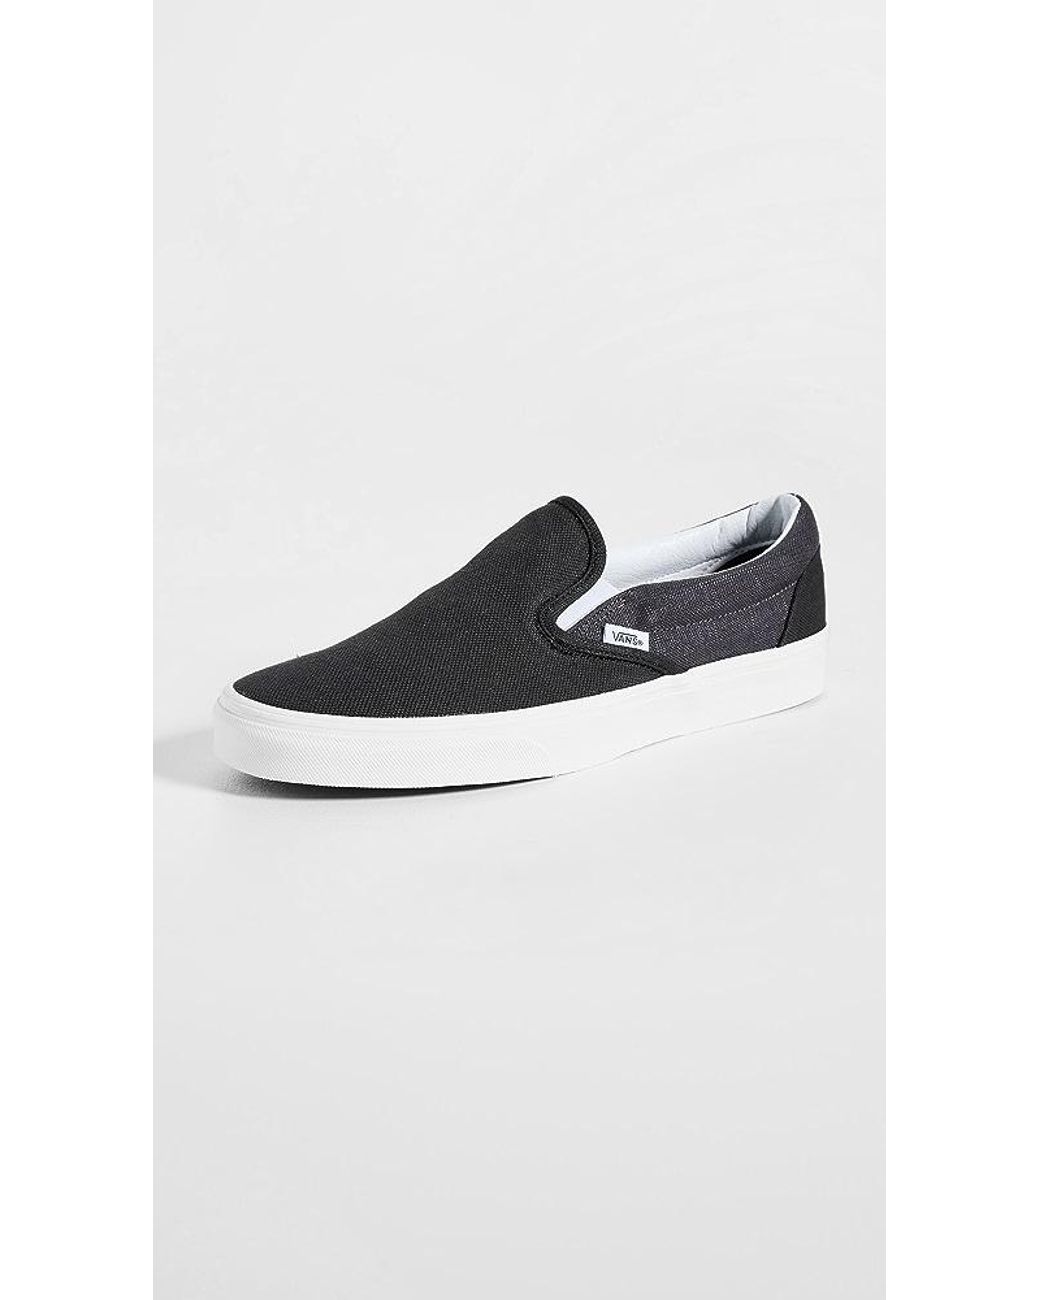 Vans Ua Classic Slip-on Summer Linen Sneakers for Men | Lyst